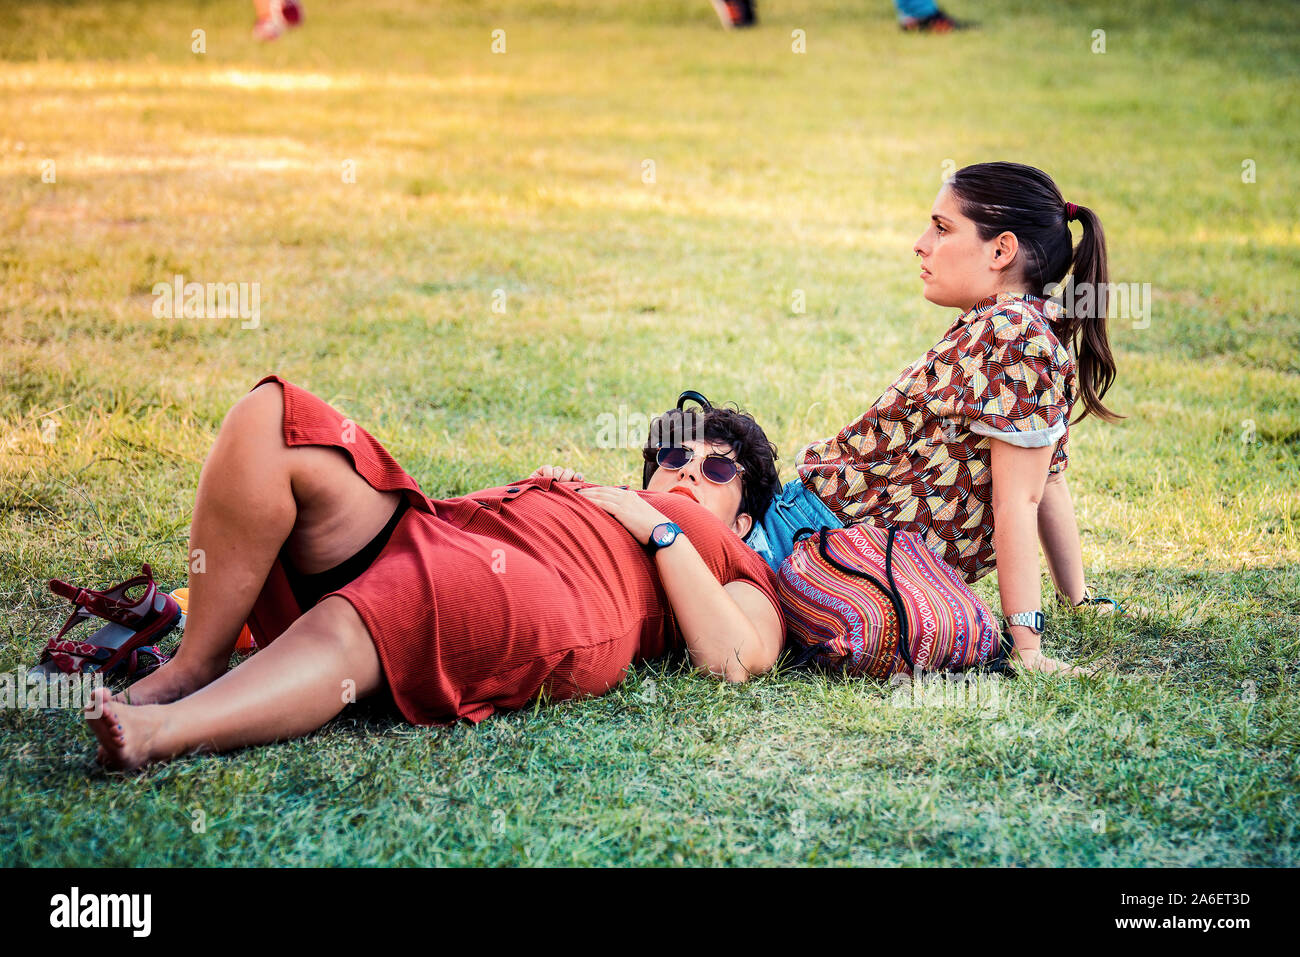 MADRID - 7 SETTEMBRE: Una coppia in erba in un concerto al Dcode Music Festival il 7 settembre 2019 a Madrid, Spagna. Foto Stock